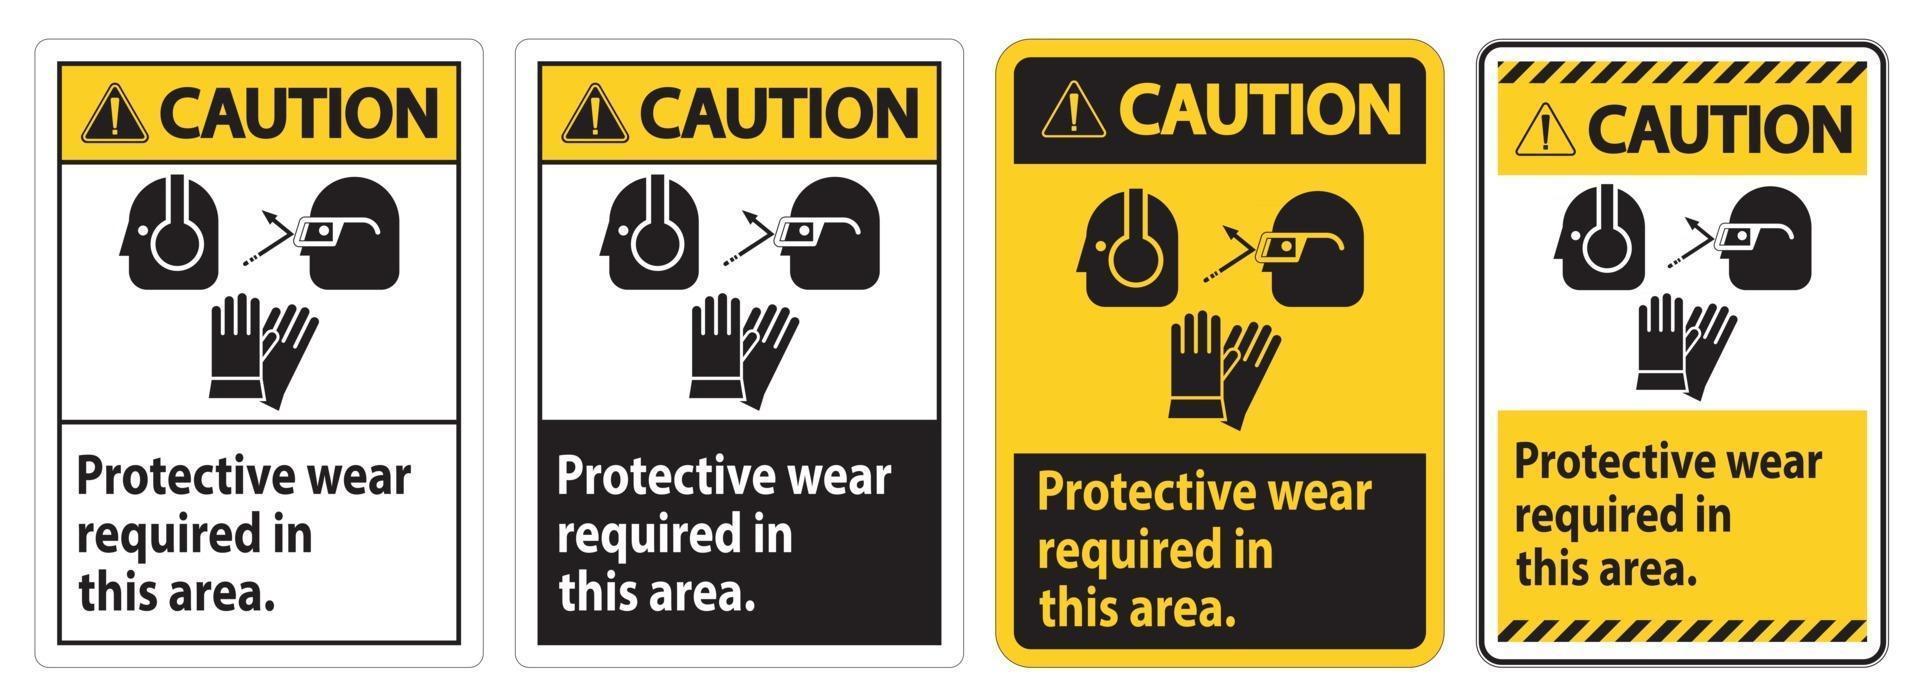 señal de precaución use equipo de protección en esta área con símbolos de ppe vector